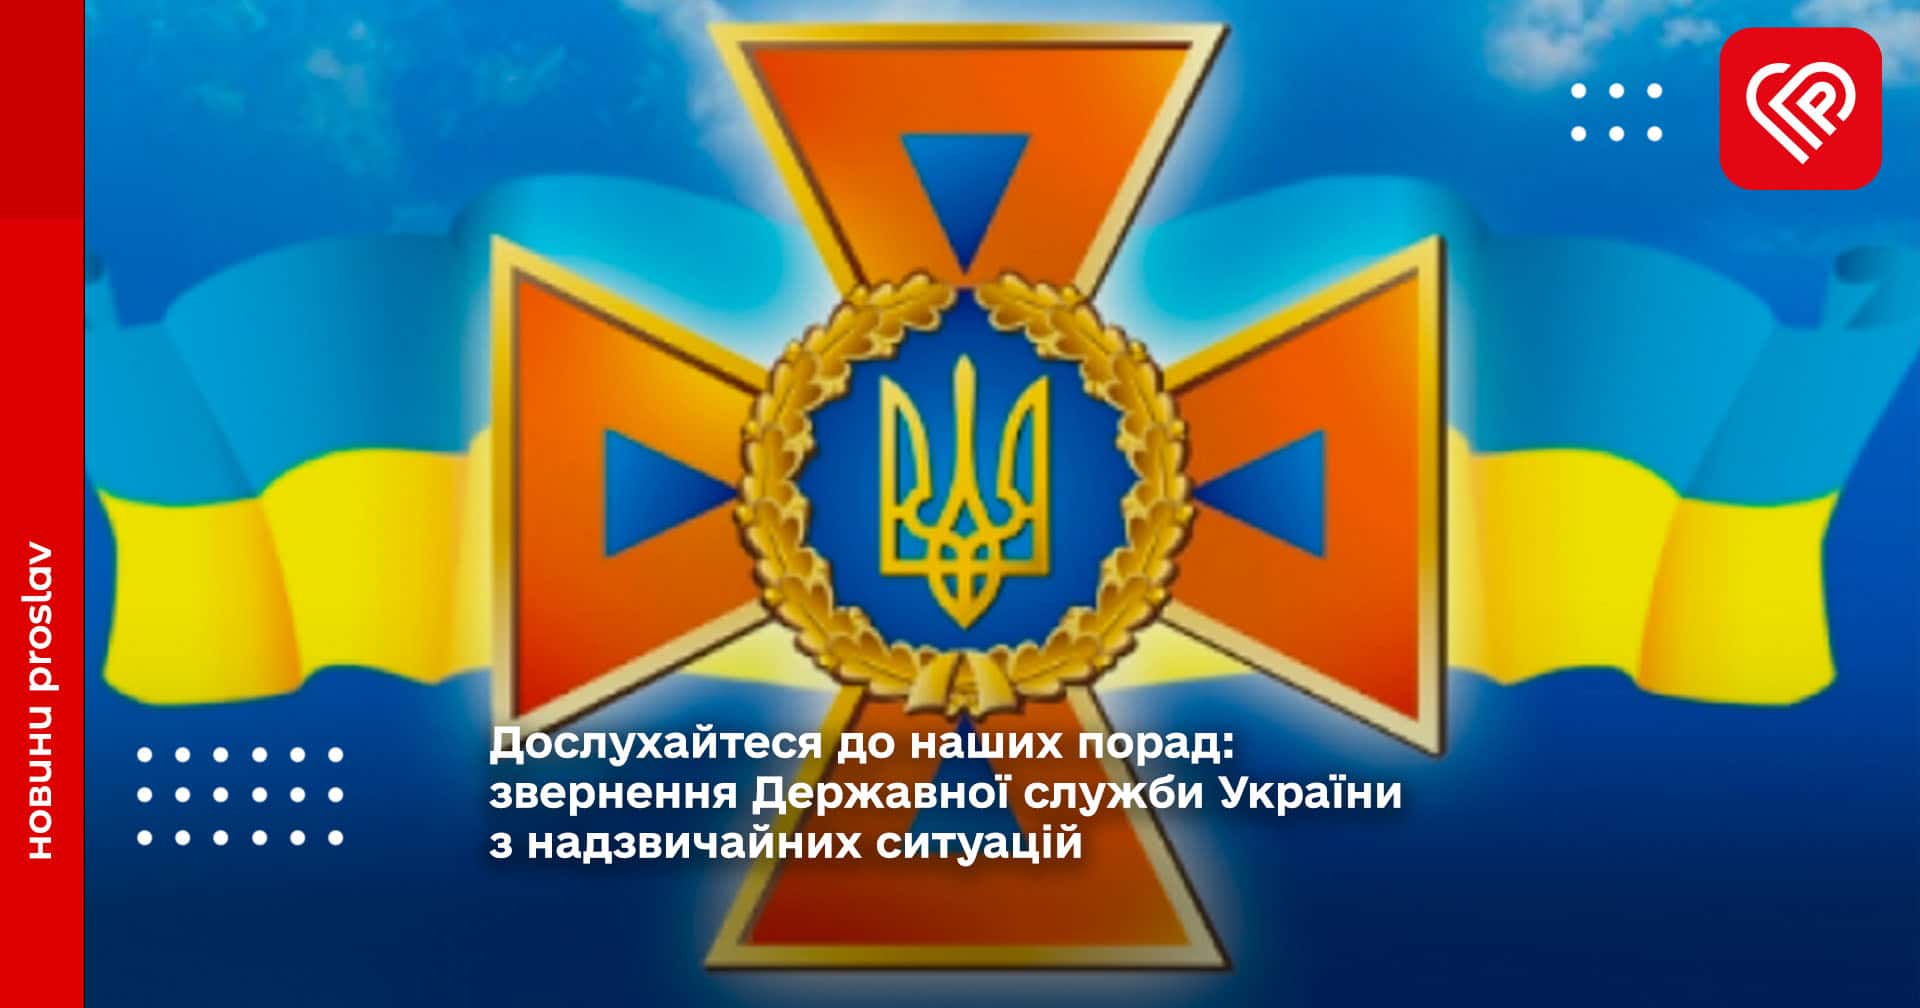 Дослухайтеся до наших порад: звернення Державної служби України з надзвичайних ситуацій